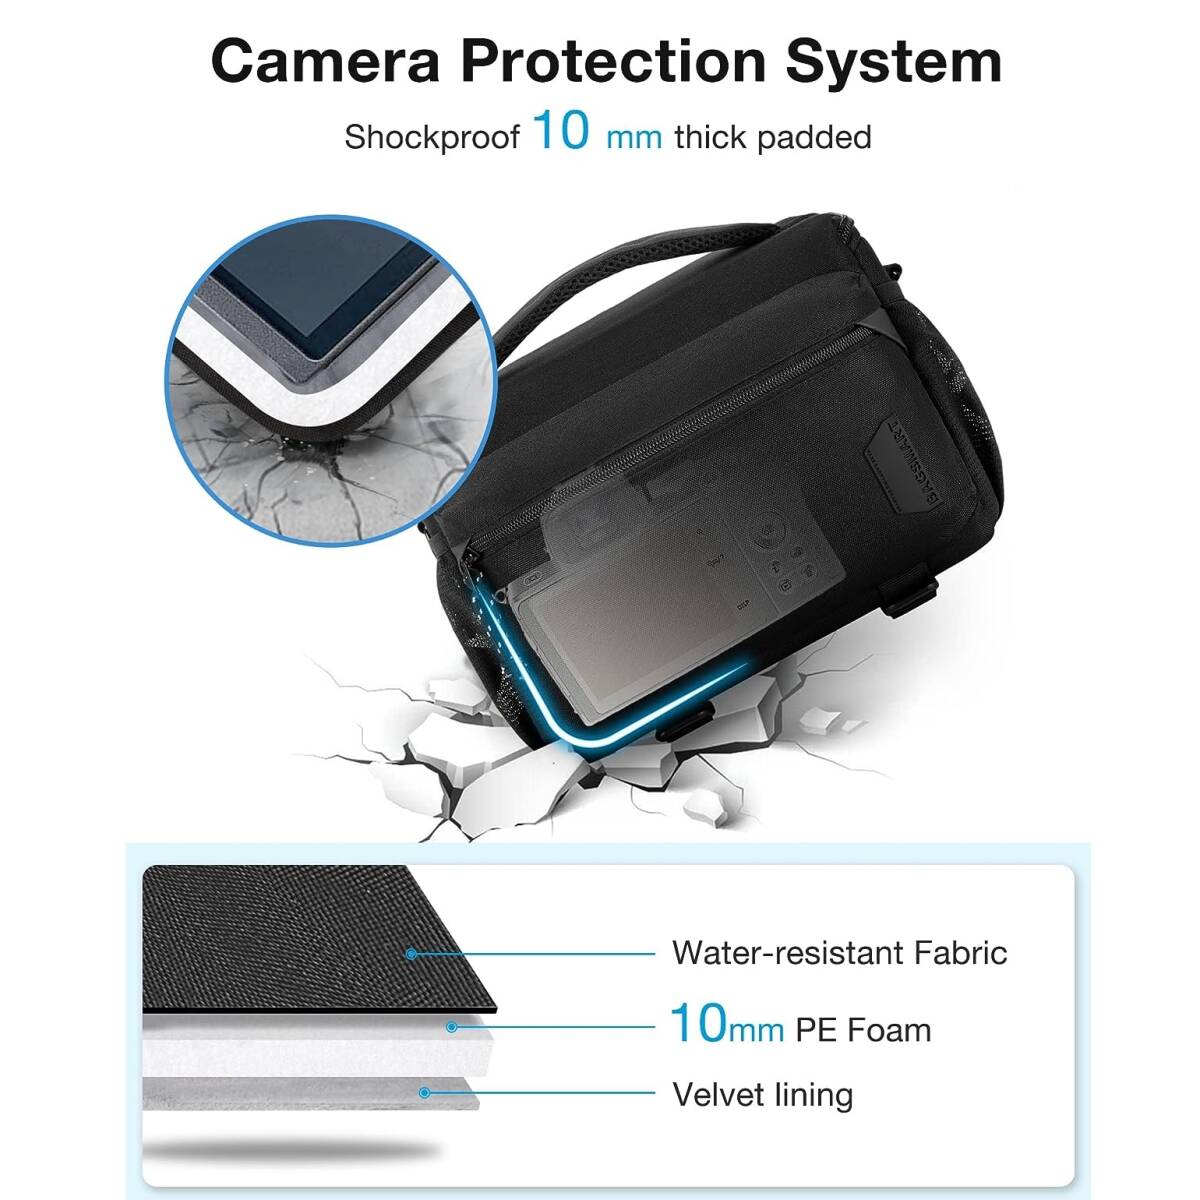 ショルダーカメラバッグ ブラック 調整可能な仕切り 三脚収納可 防水キャンバス カメラケース カメラを安全に持ち運ぶために役立つアイテム_画像7